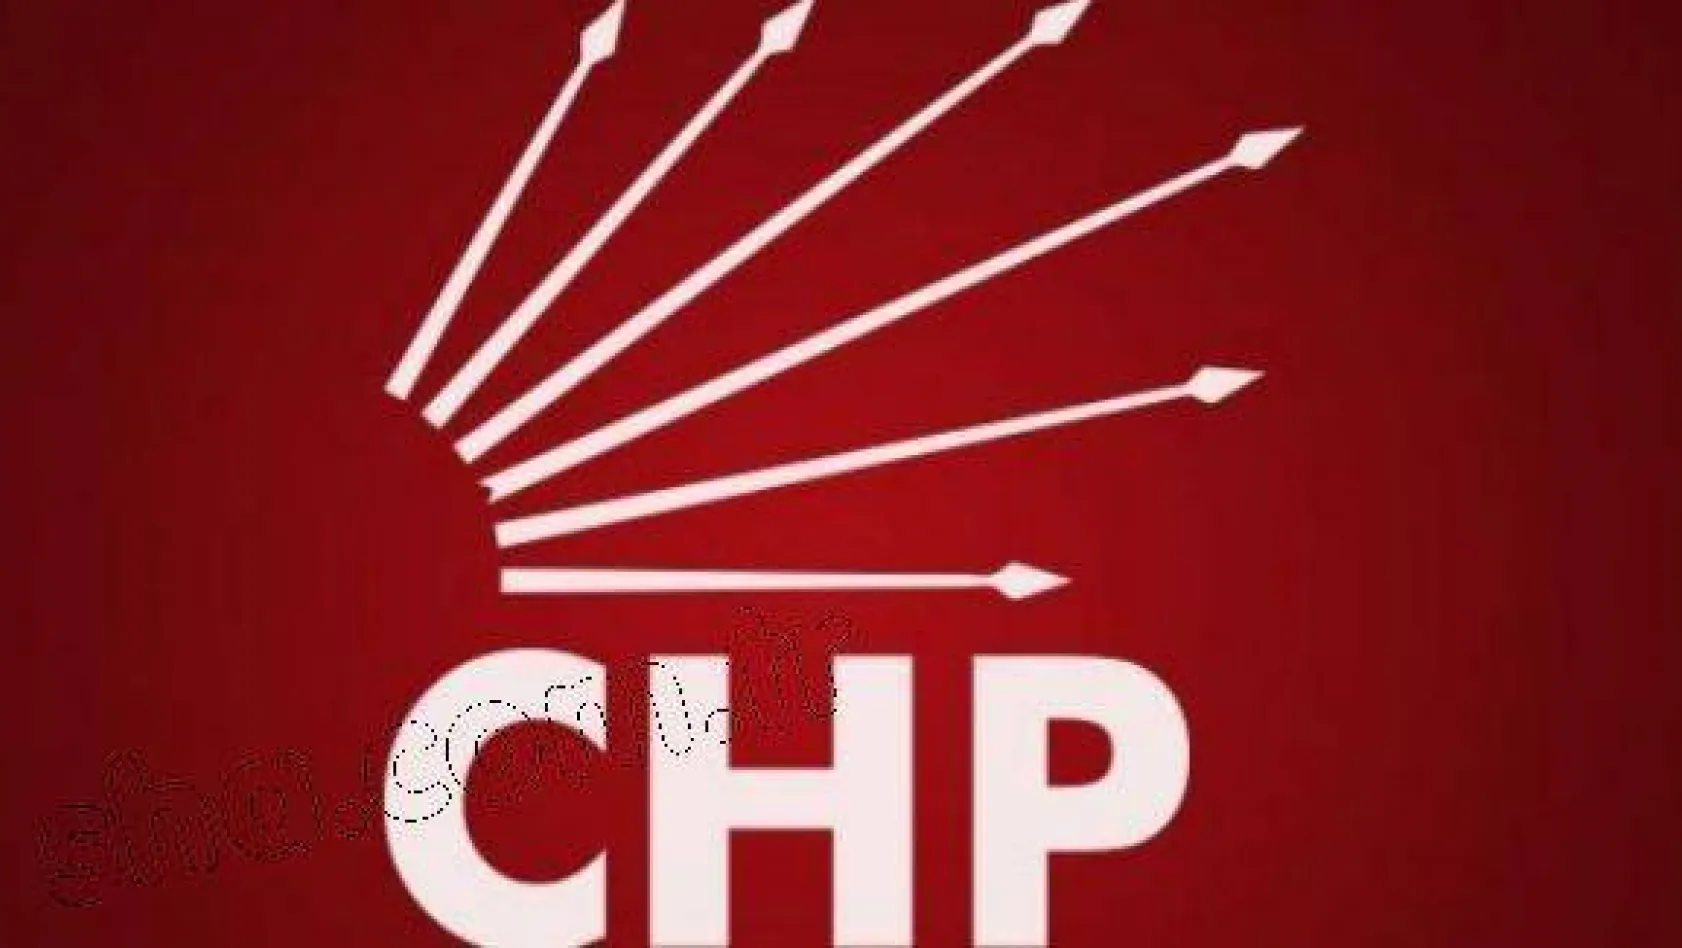 CHP Silivri İlçe Başkanlığı'ndan Duyuru